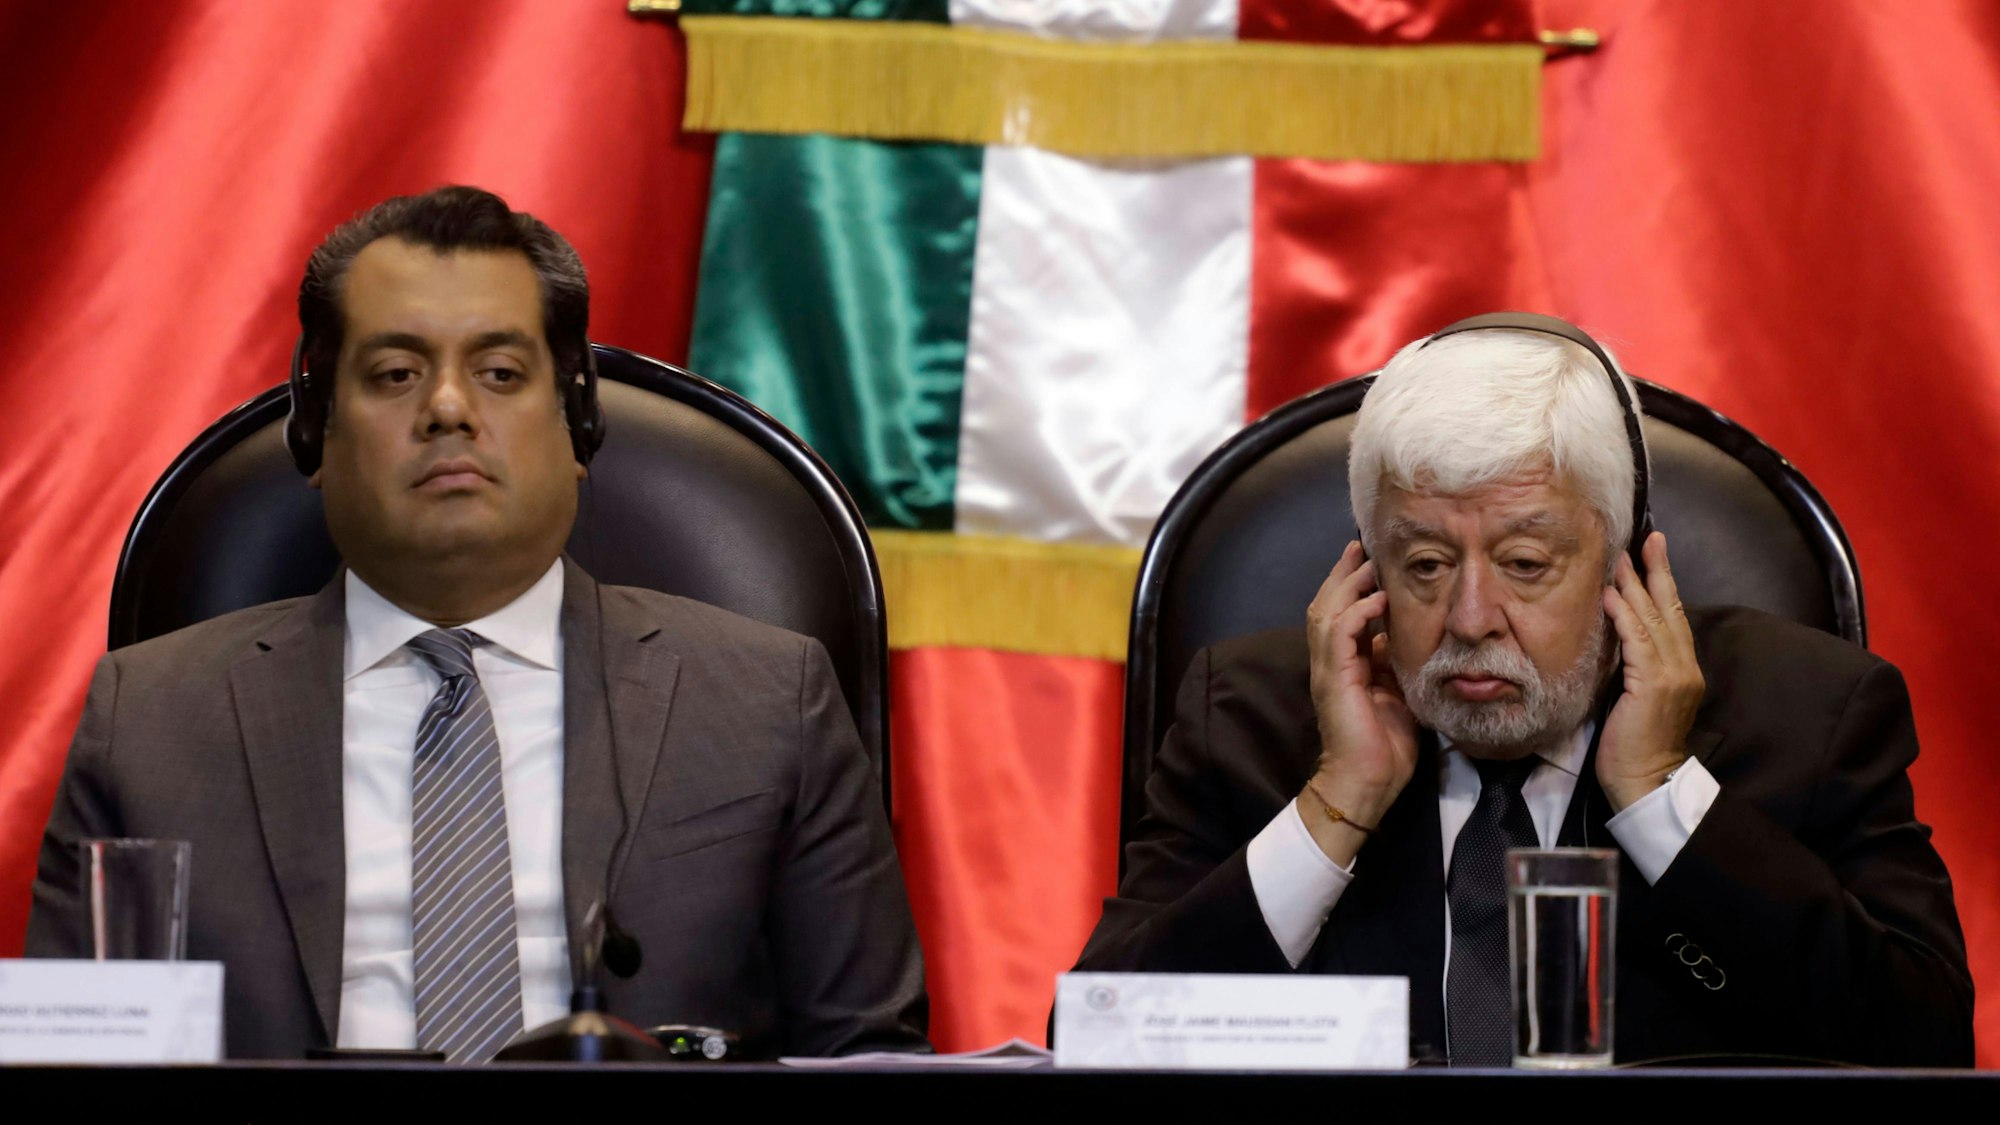 Bundesvertreter Sergio Gutierrez Luna und Ufologe Jaime Maussan bei der öffentlichen Anhörung über unidentifizierte anomale Phänomene im Abgeordnetenhaus von Mexiko-Stadt am 12. September 2023.